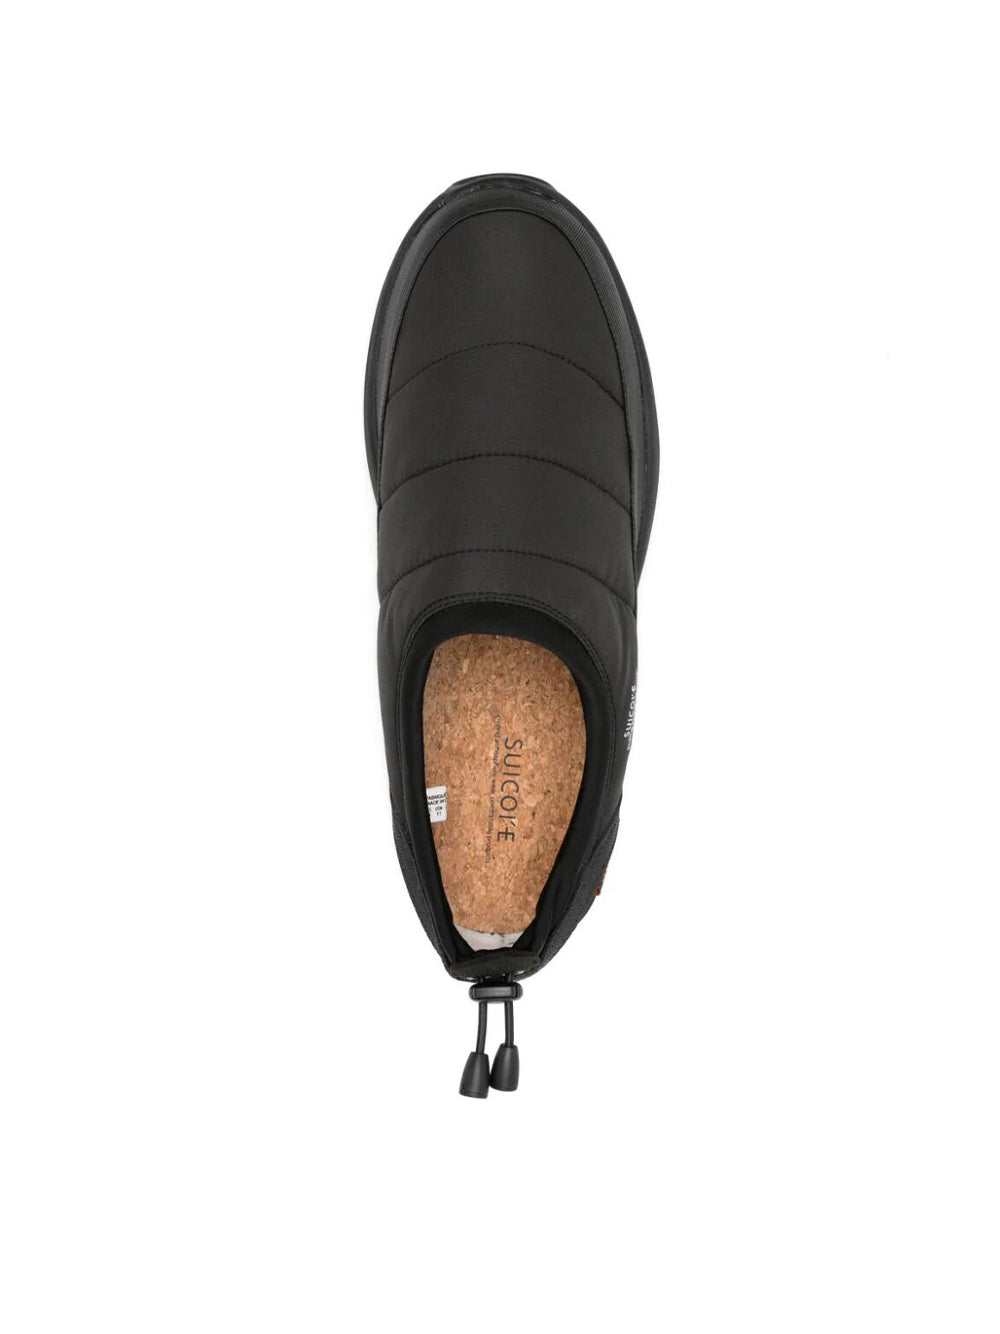 Padded Shoe Pepper-modev Black